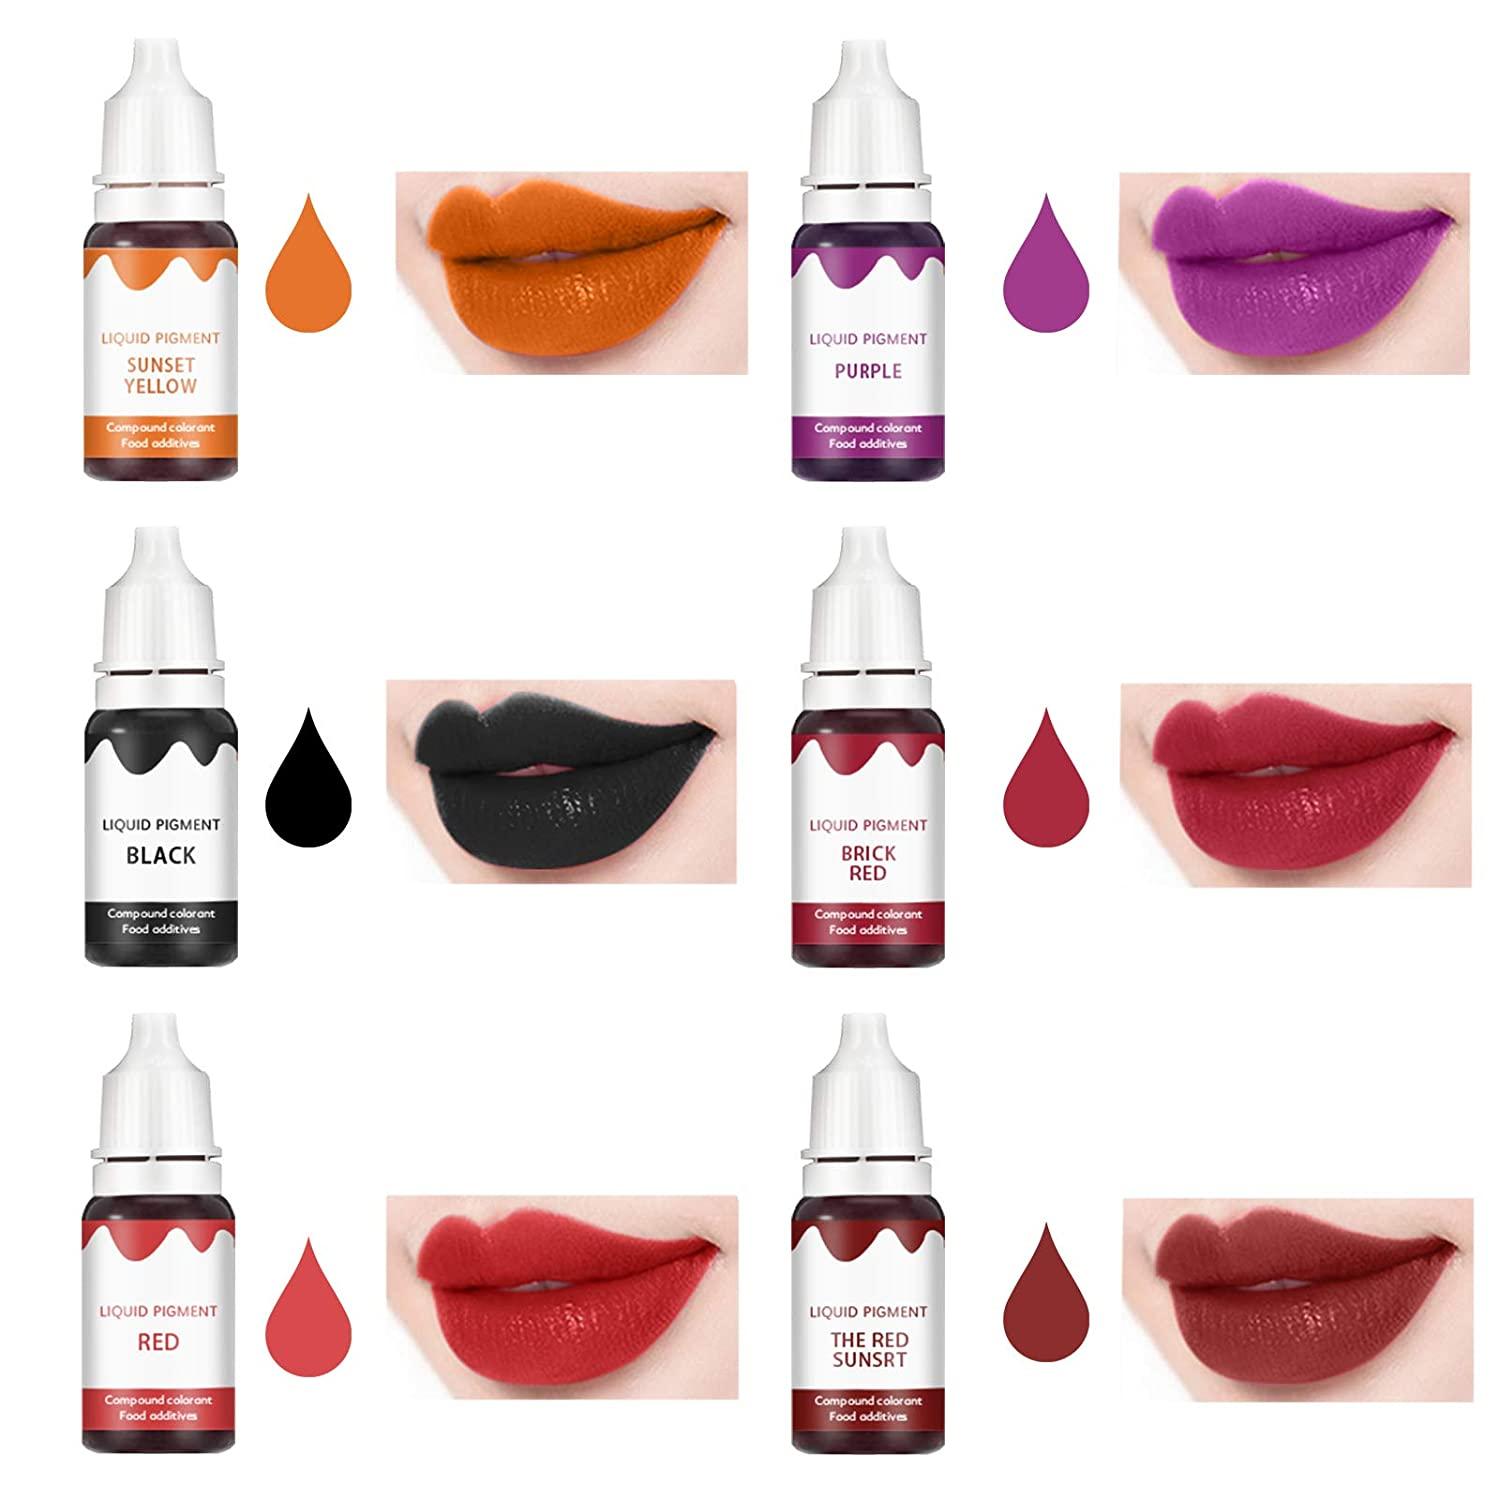  Novobey 12 Colors Liquid Lip Gloss Pigment Set